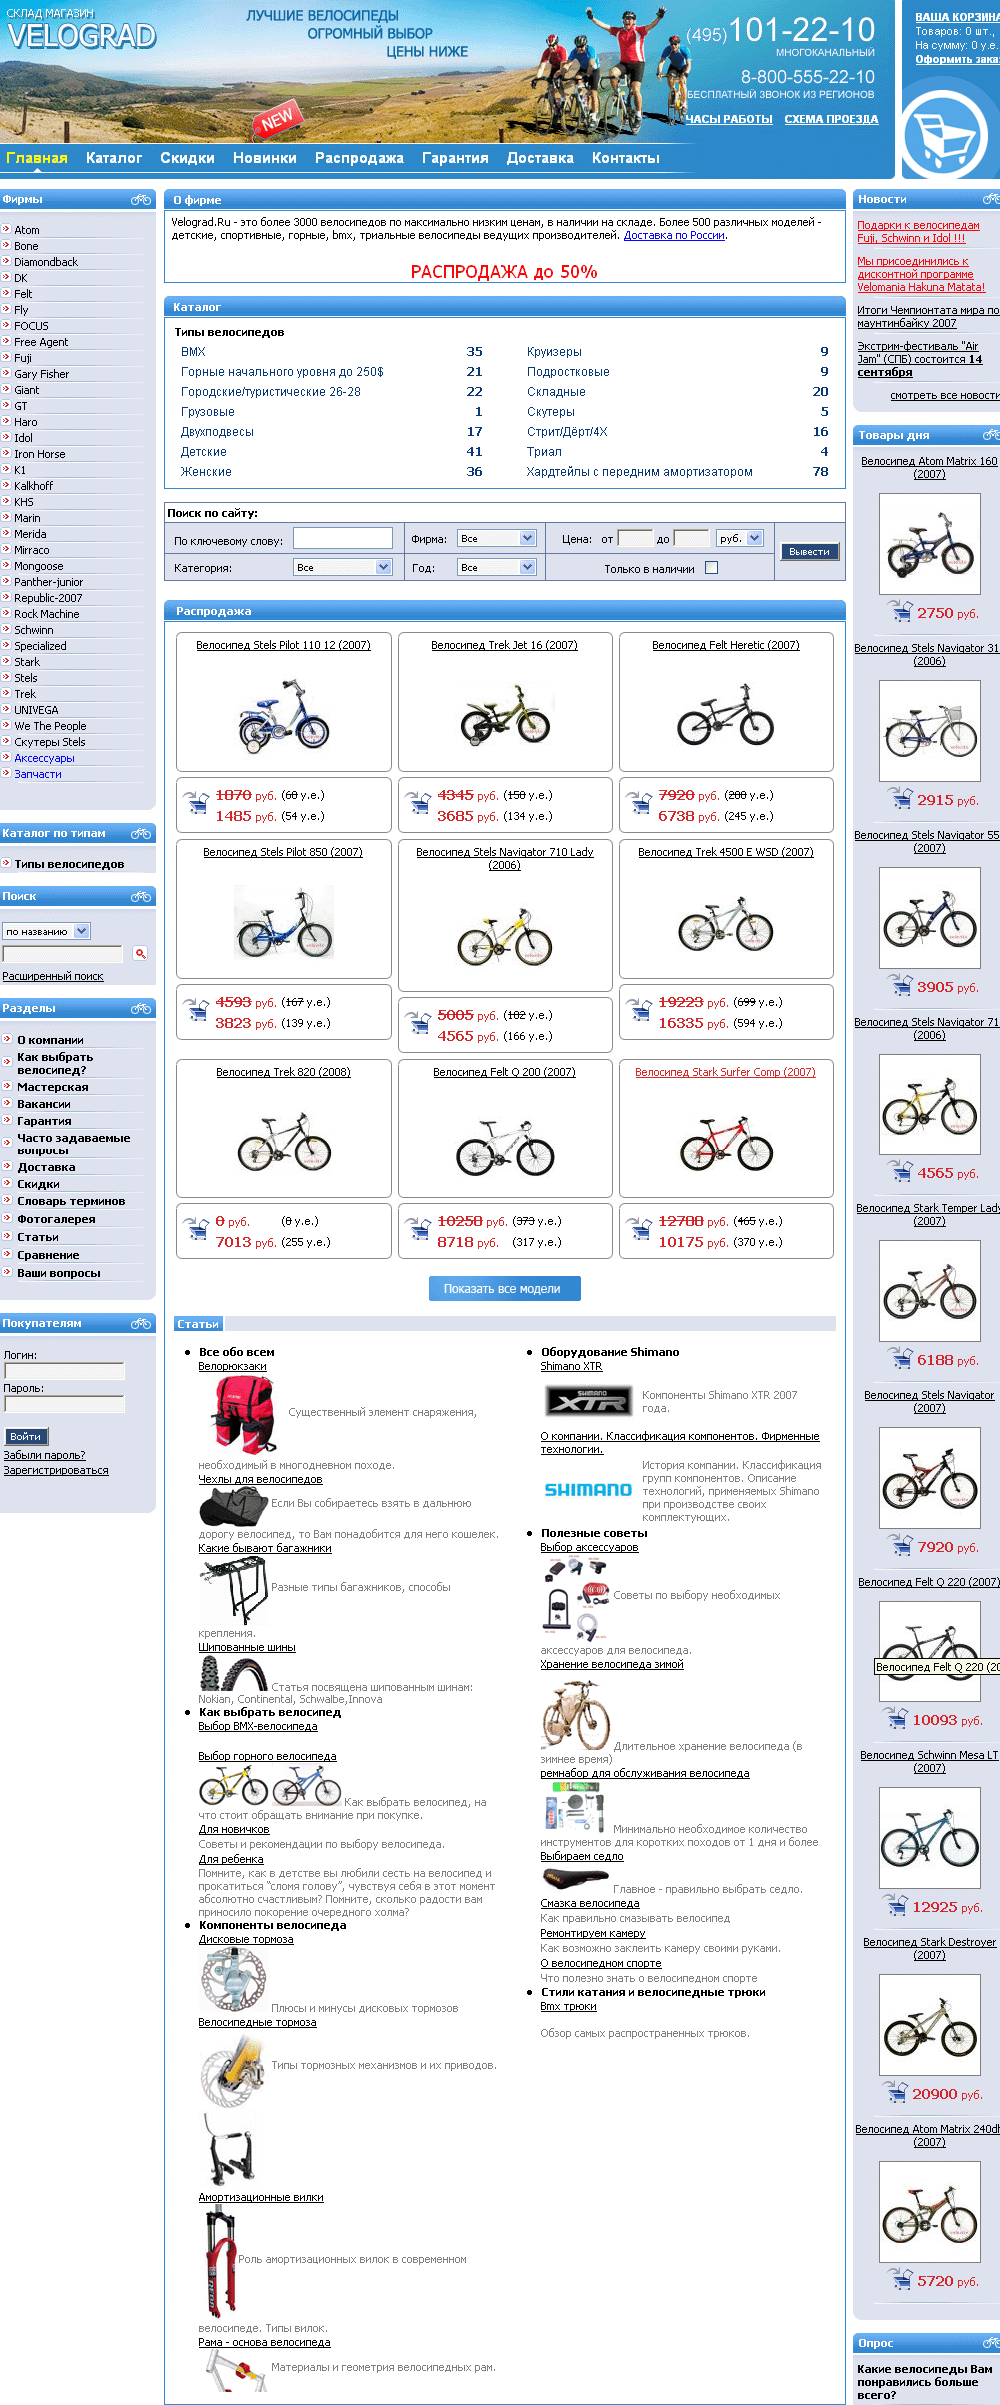 Cозданый интернет-магазин велосипедов